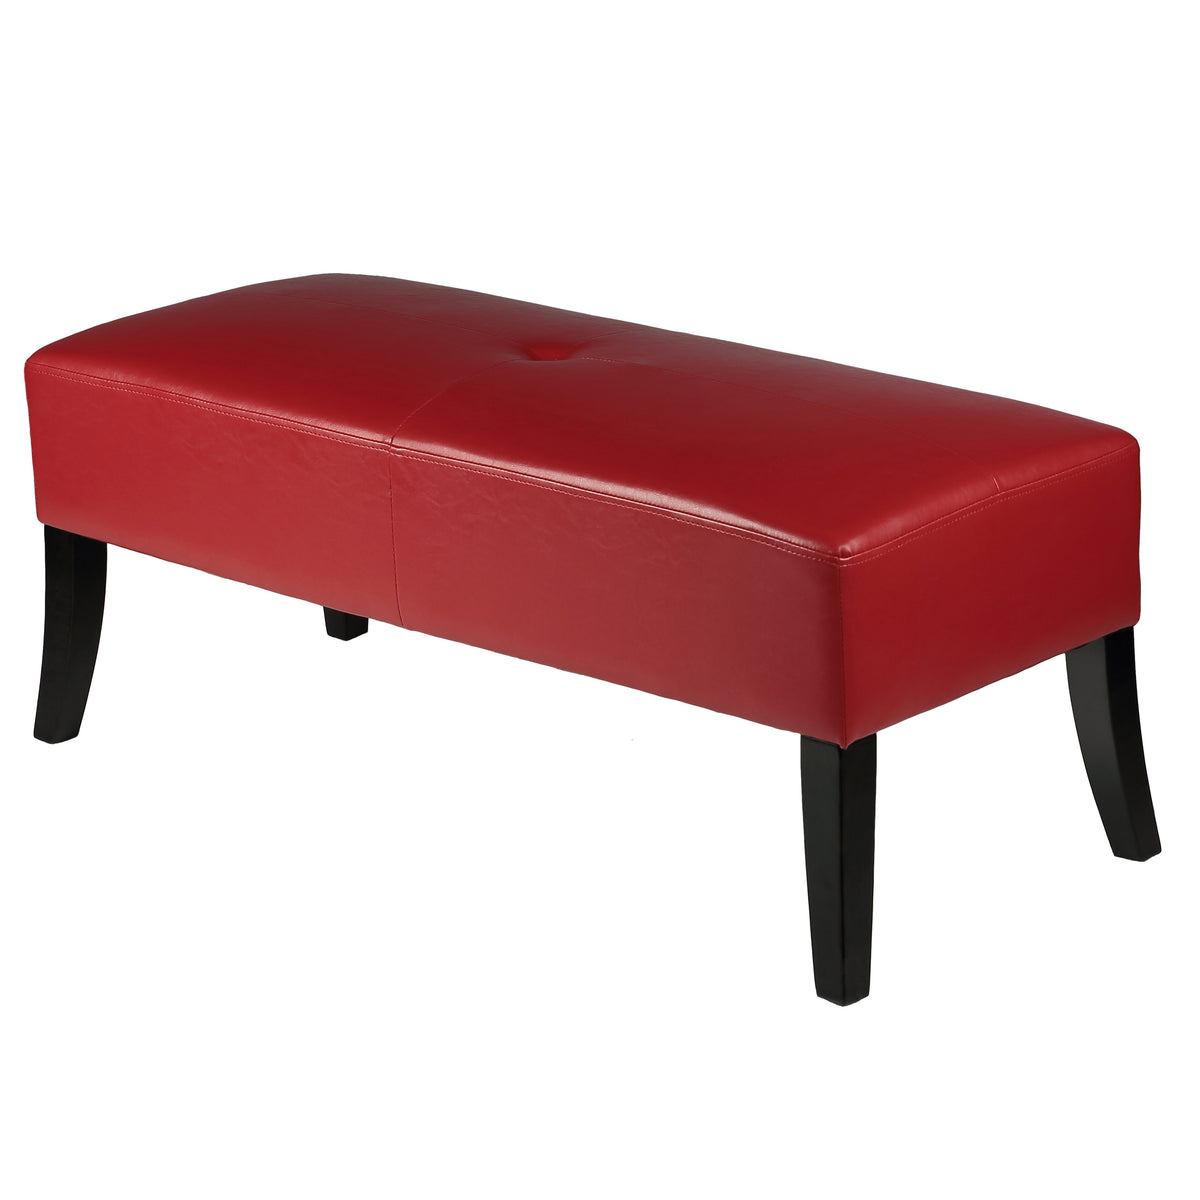 Cortesi Home Jasper Crimson Red Faux Leather Bench Ottoman